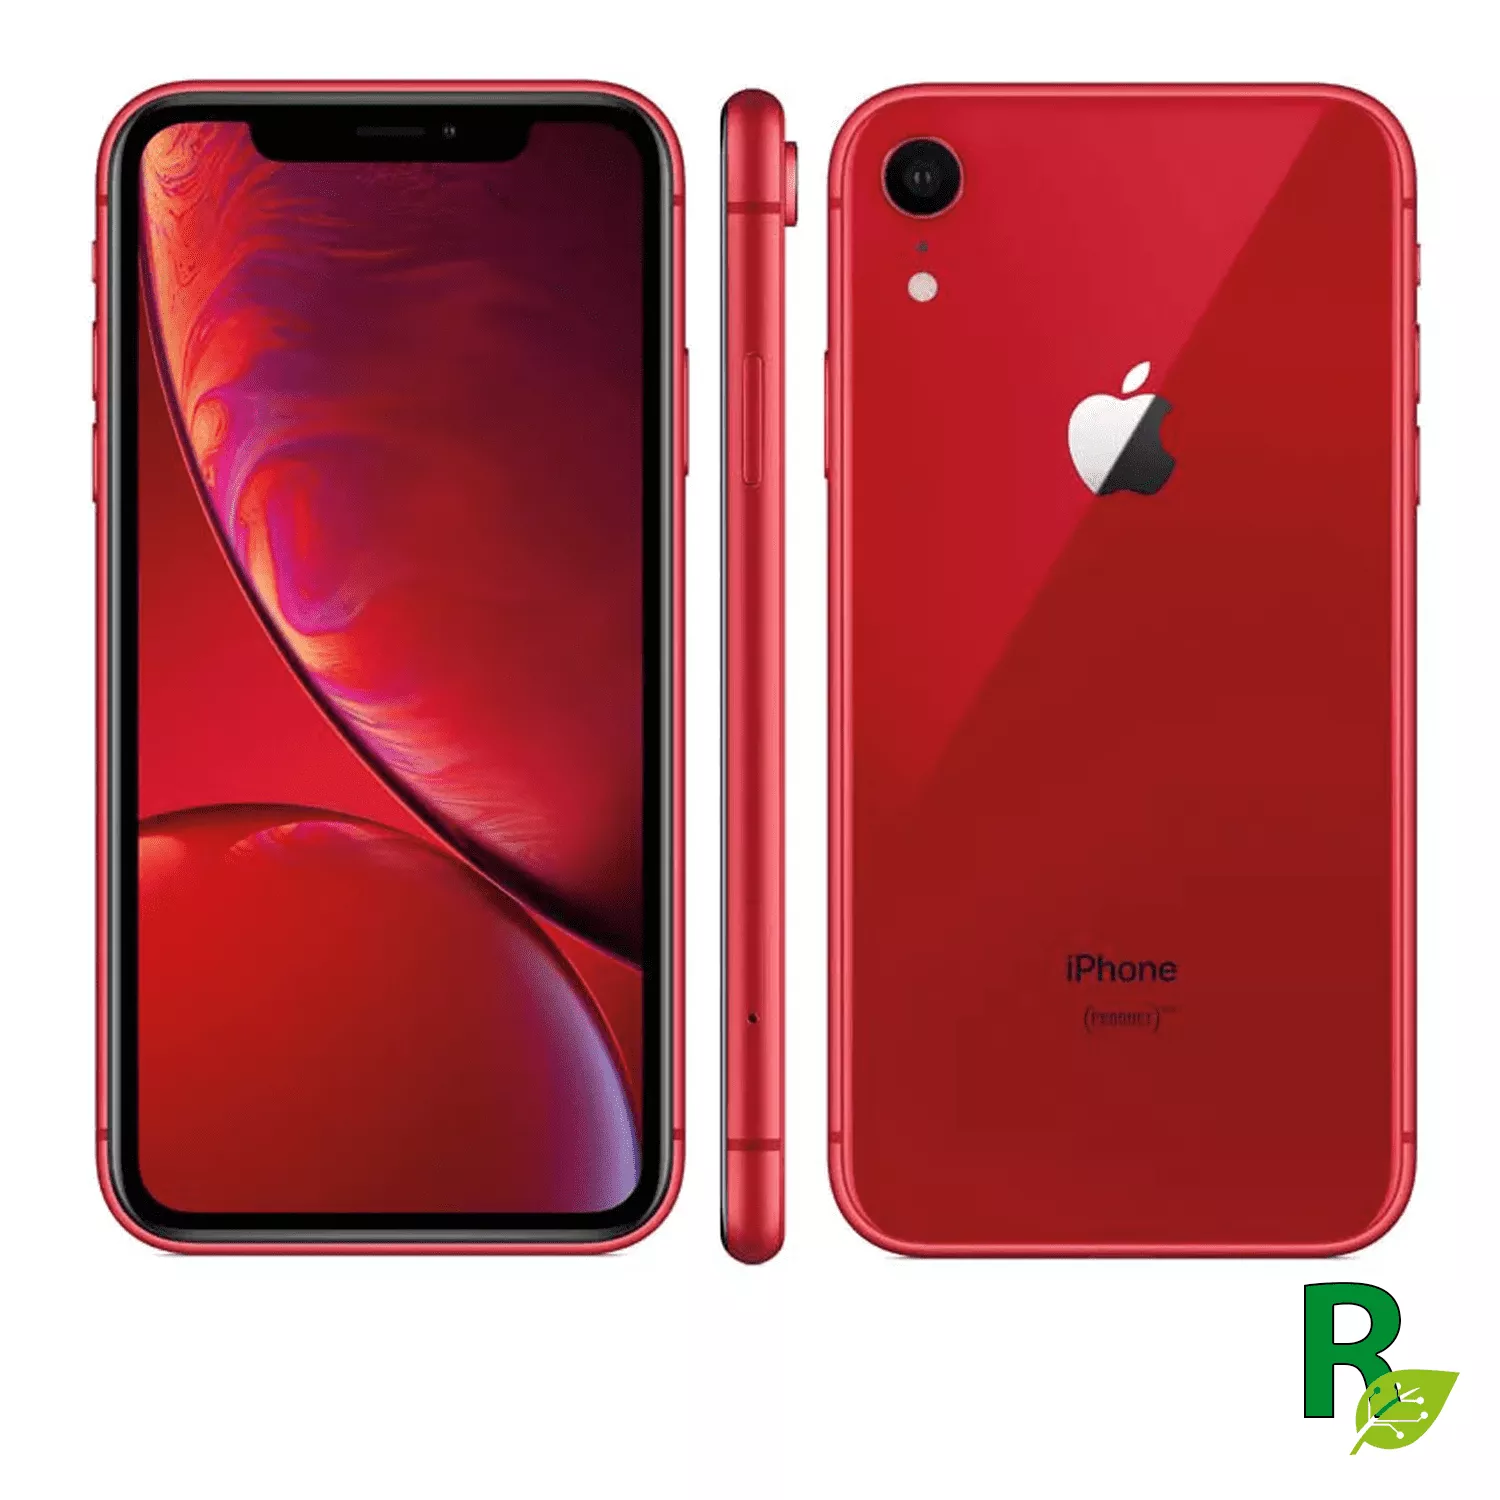 iPhone XR 128GB - Rojo - XRRED128A - Cat. A  XR128IPH5-Reacondicionado